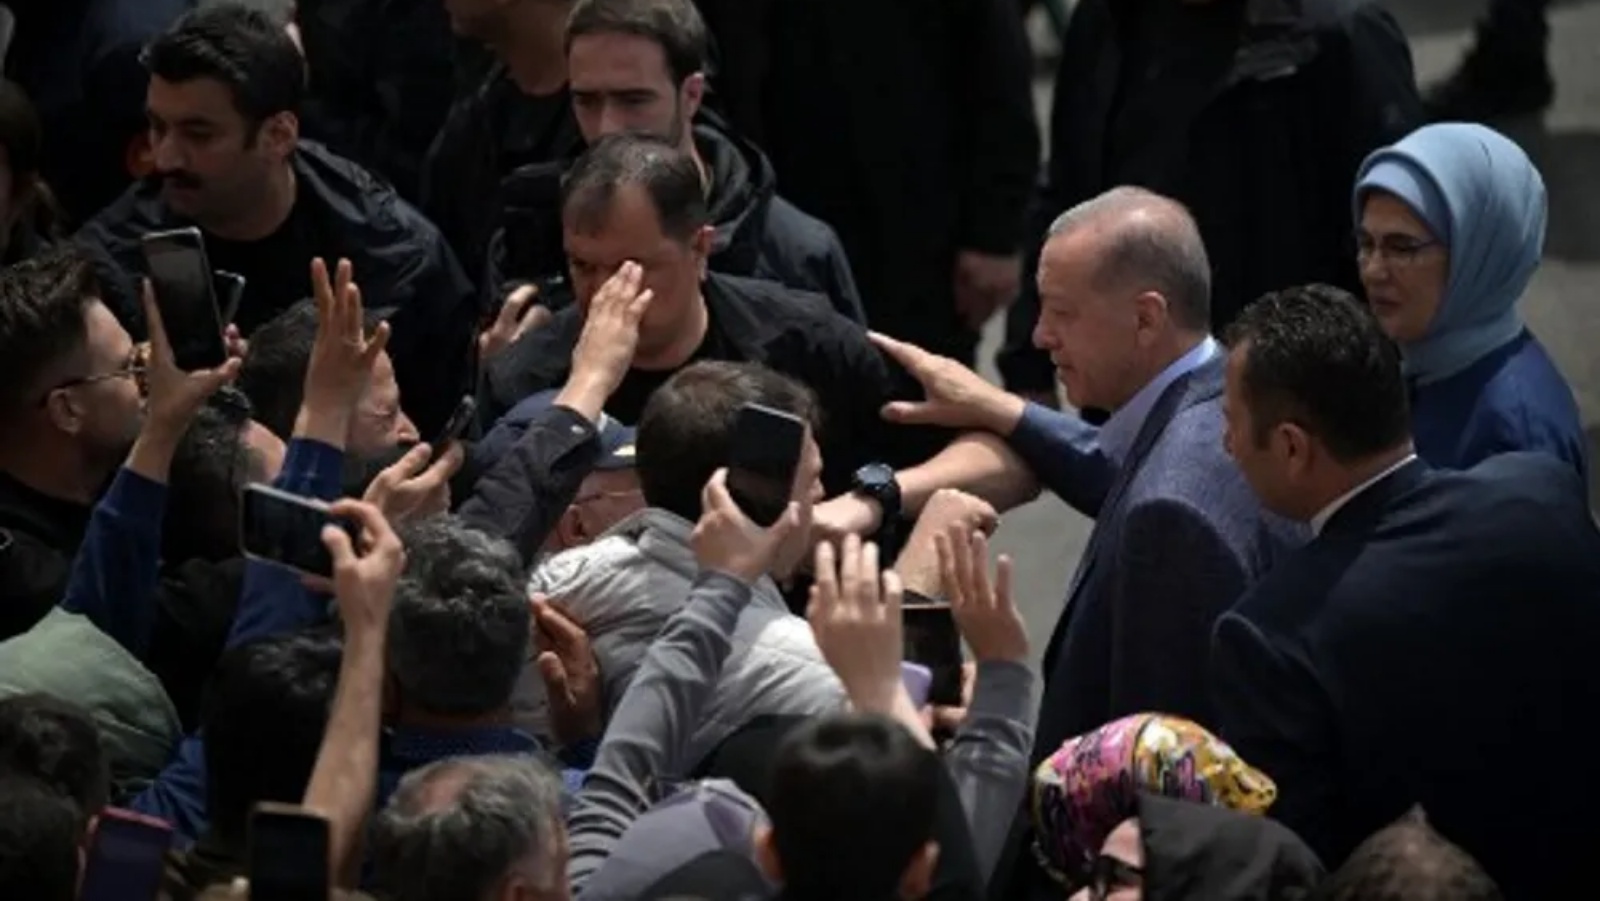 الرئيس التركي رجب طيب أردوغان وزوجته أمينة أردوغان (يمين) محاطان بالحشود أثناء مغادرتهم مركز الاقتراع بعد التصويت في الانتخابات الرئاسية والبرلمانية، في اسطنبول، تركيا، في 14 مايو 2023.